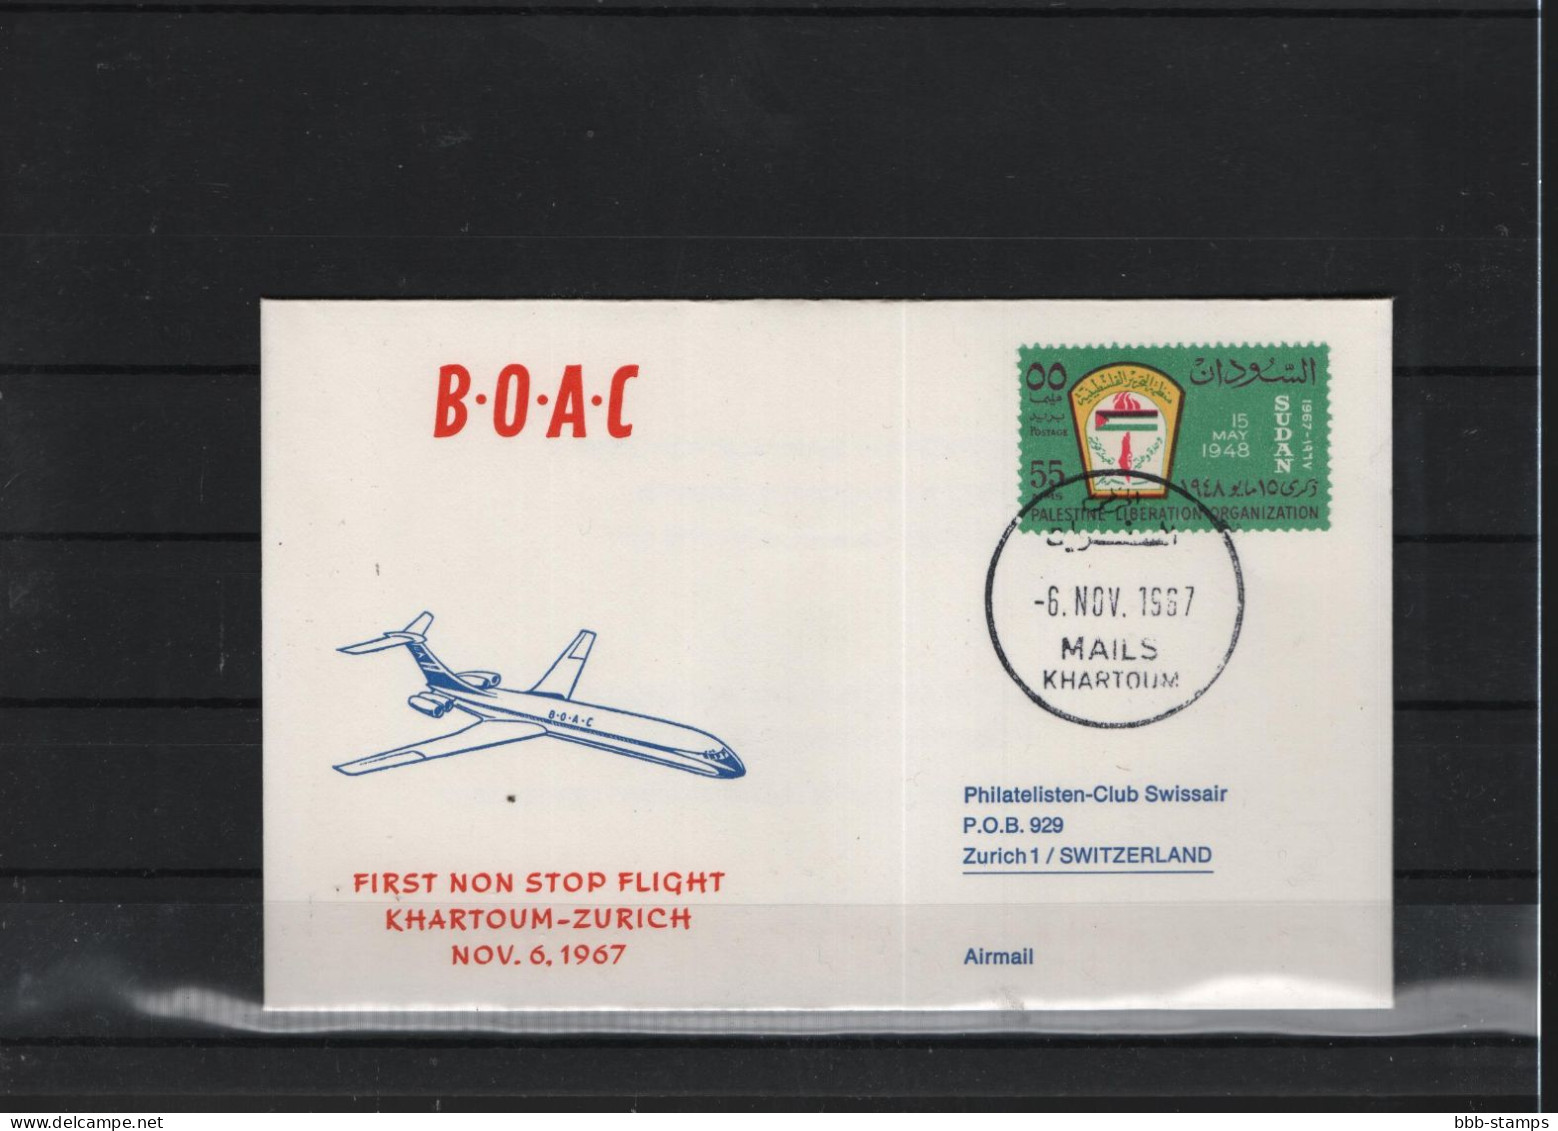 Schweiz Luftpost FFC BOAC 6.11.1967 Khartoum - Zürich - Primeros Vuelos